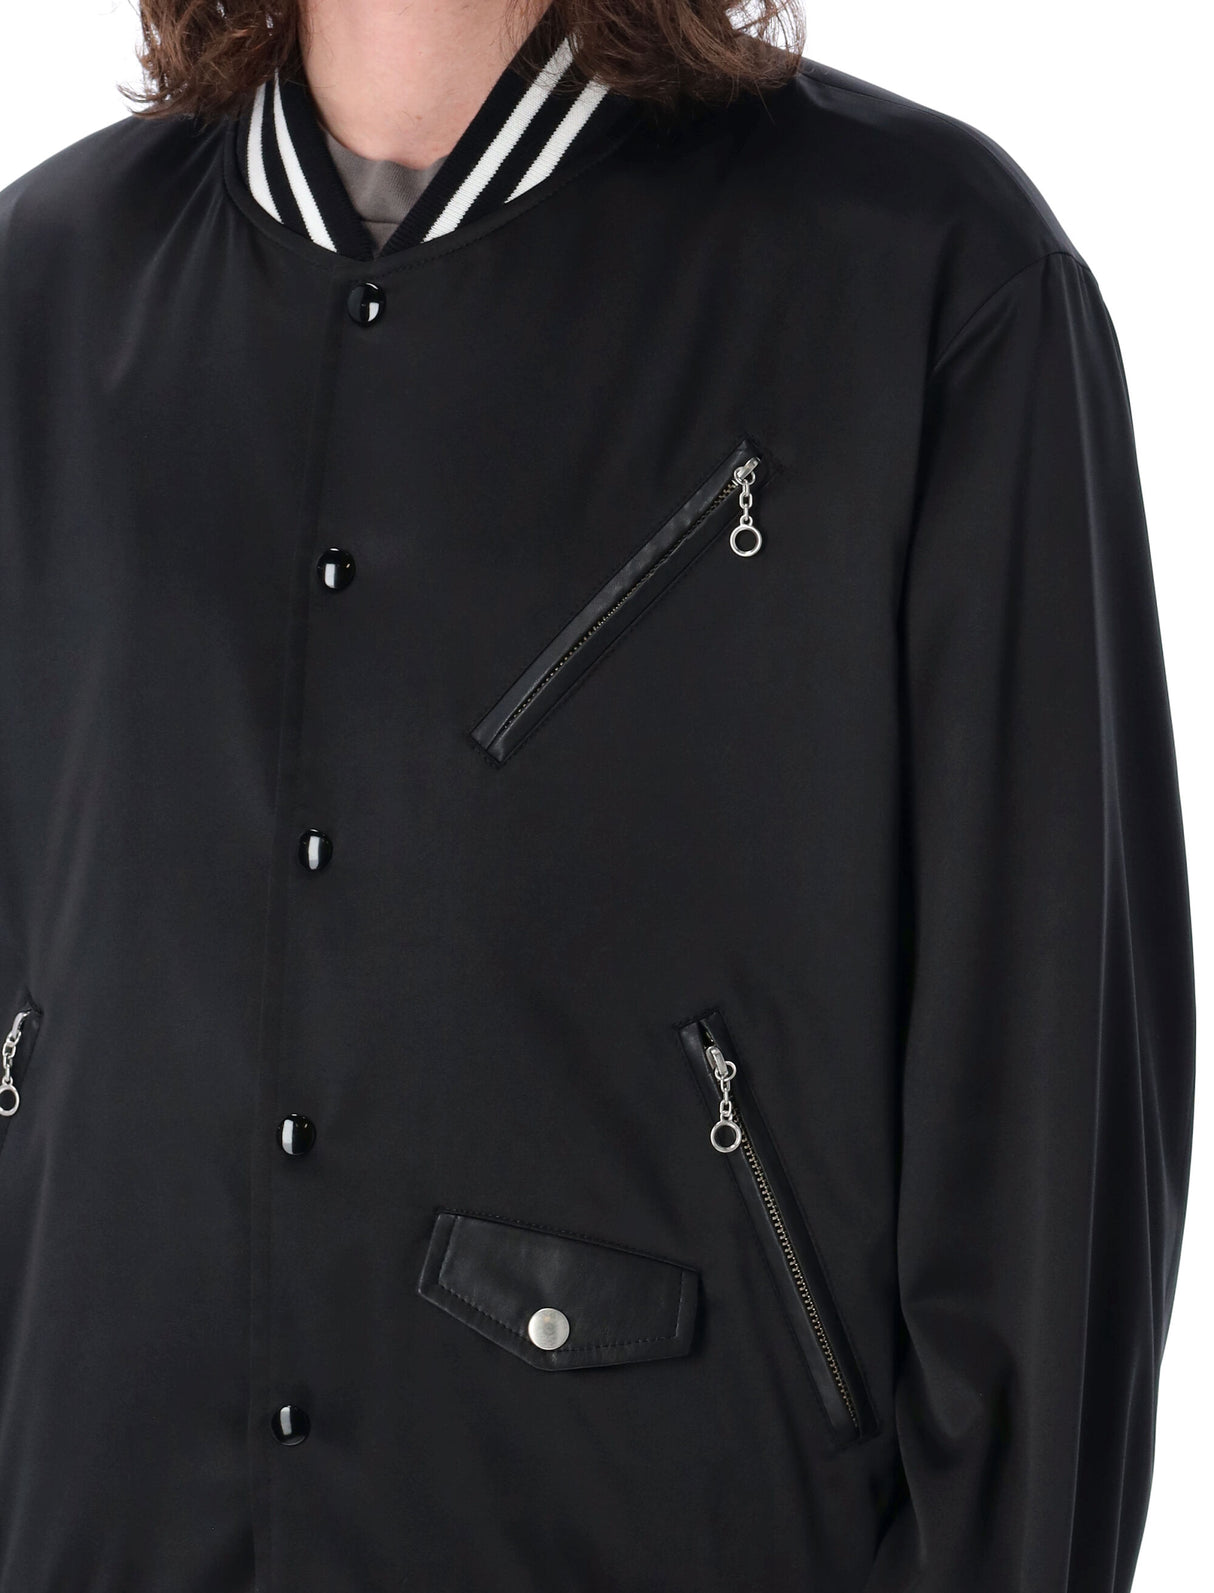 Áo khoác đen bóng cho nam giới phối đồ thời trang